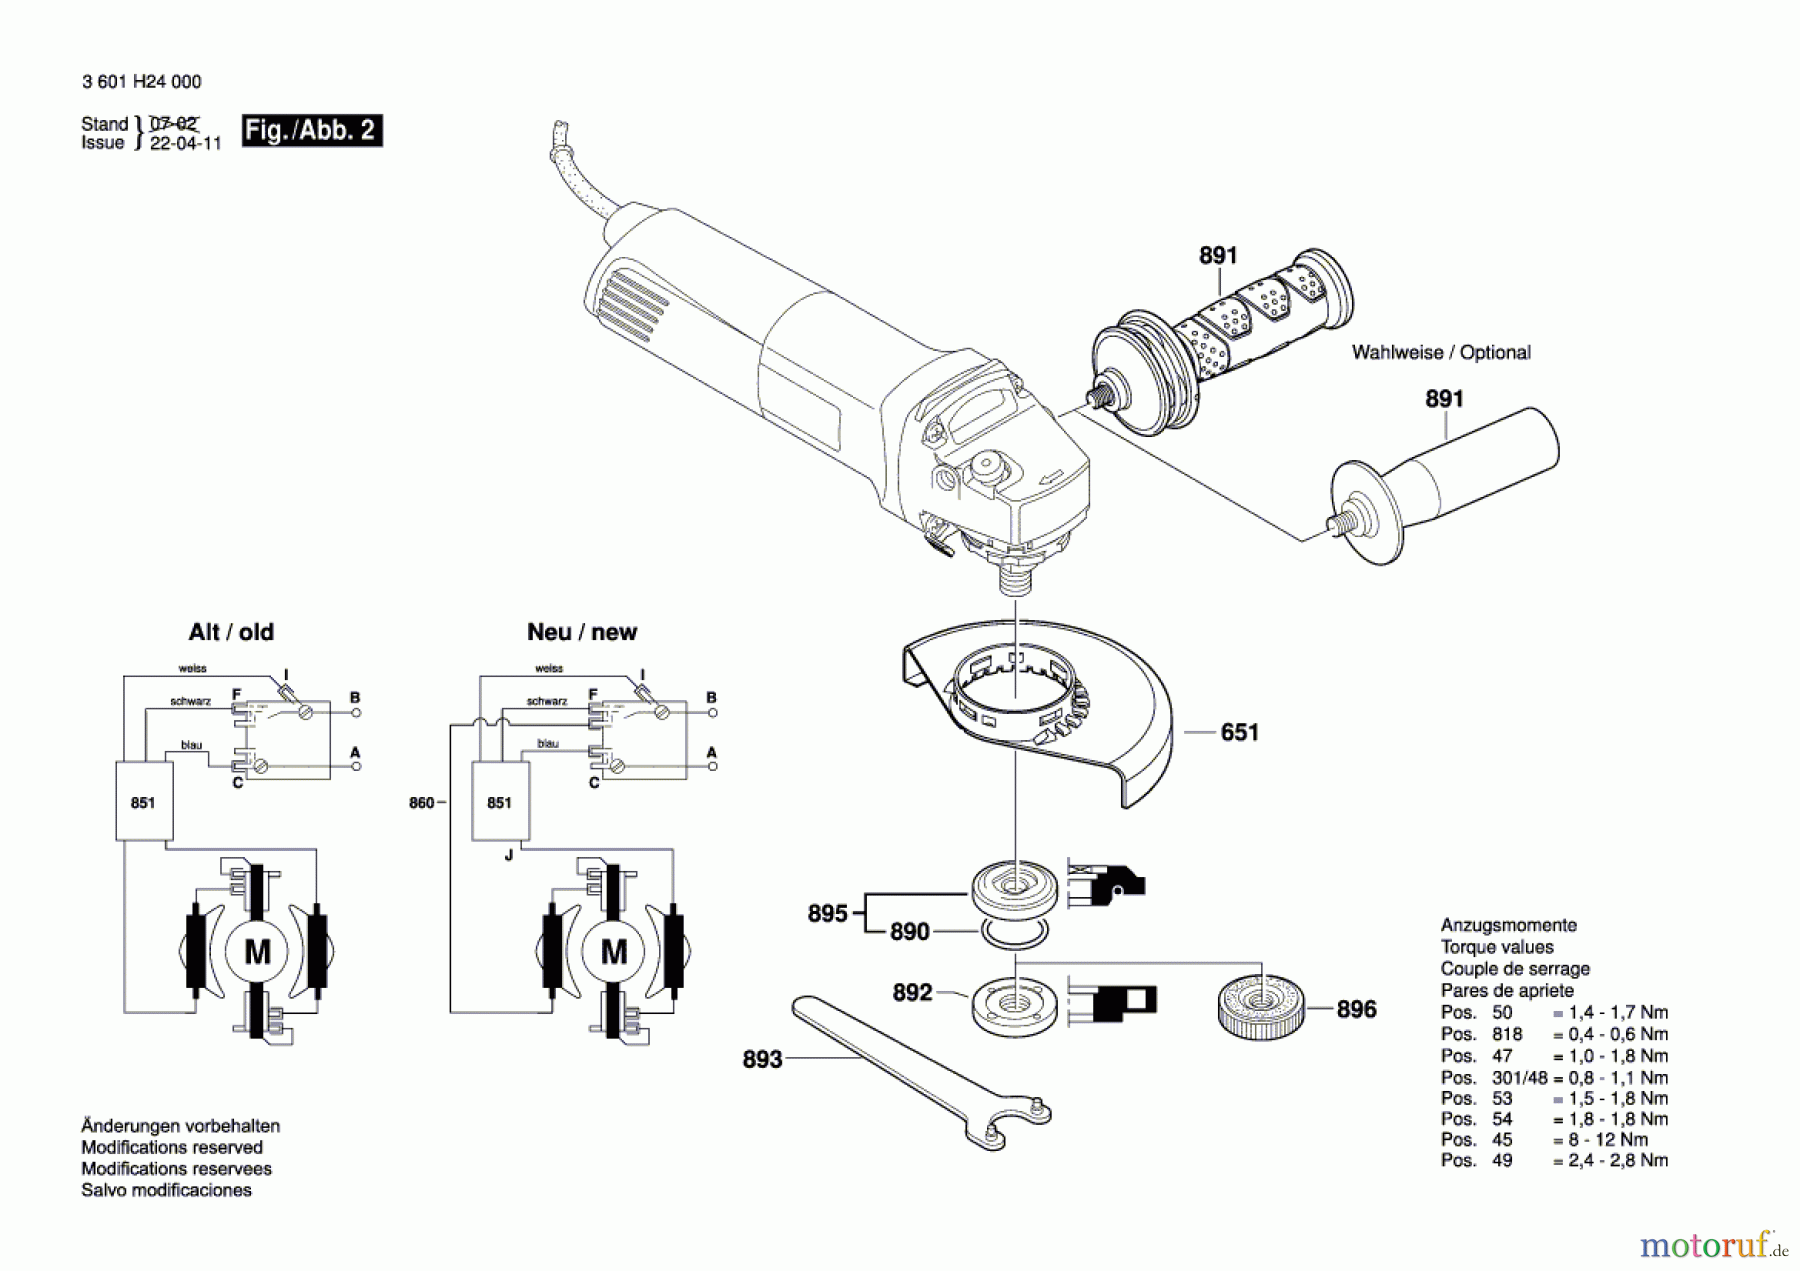  Bosch Werkzeug Winkelschleifer GWS 14-125 CIE Seite 2